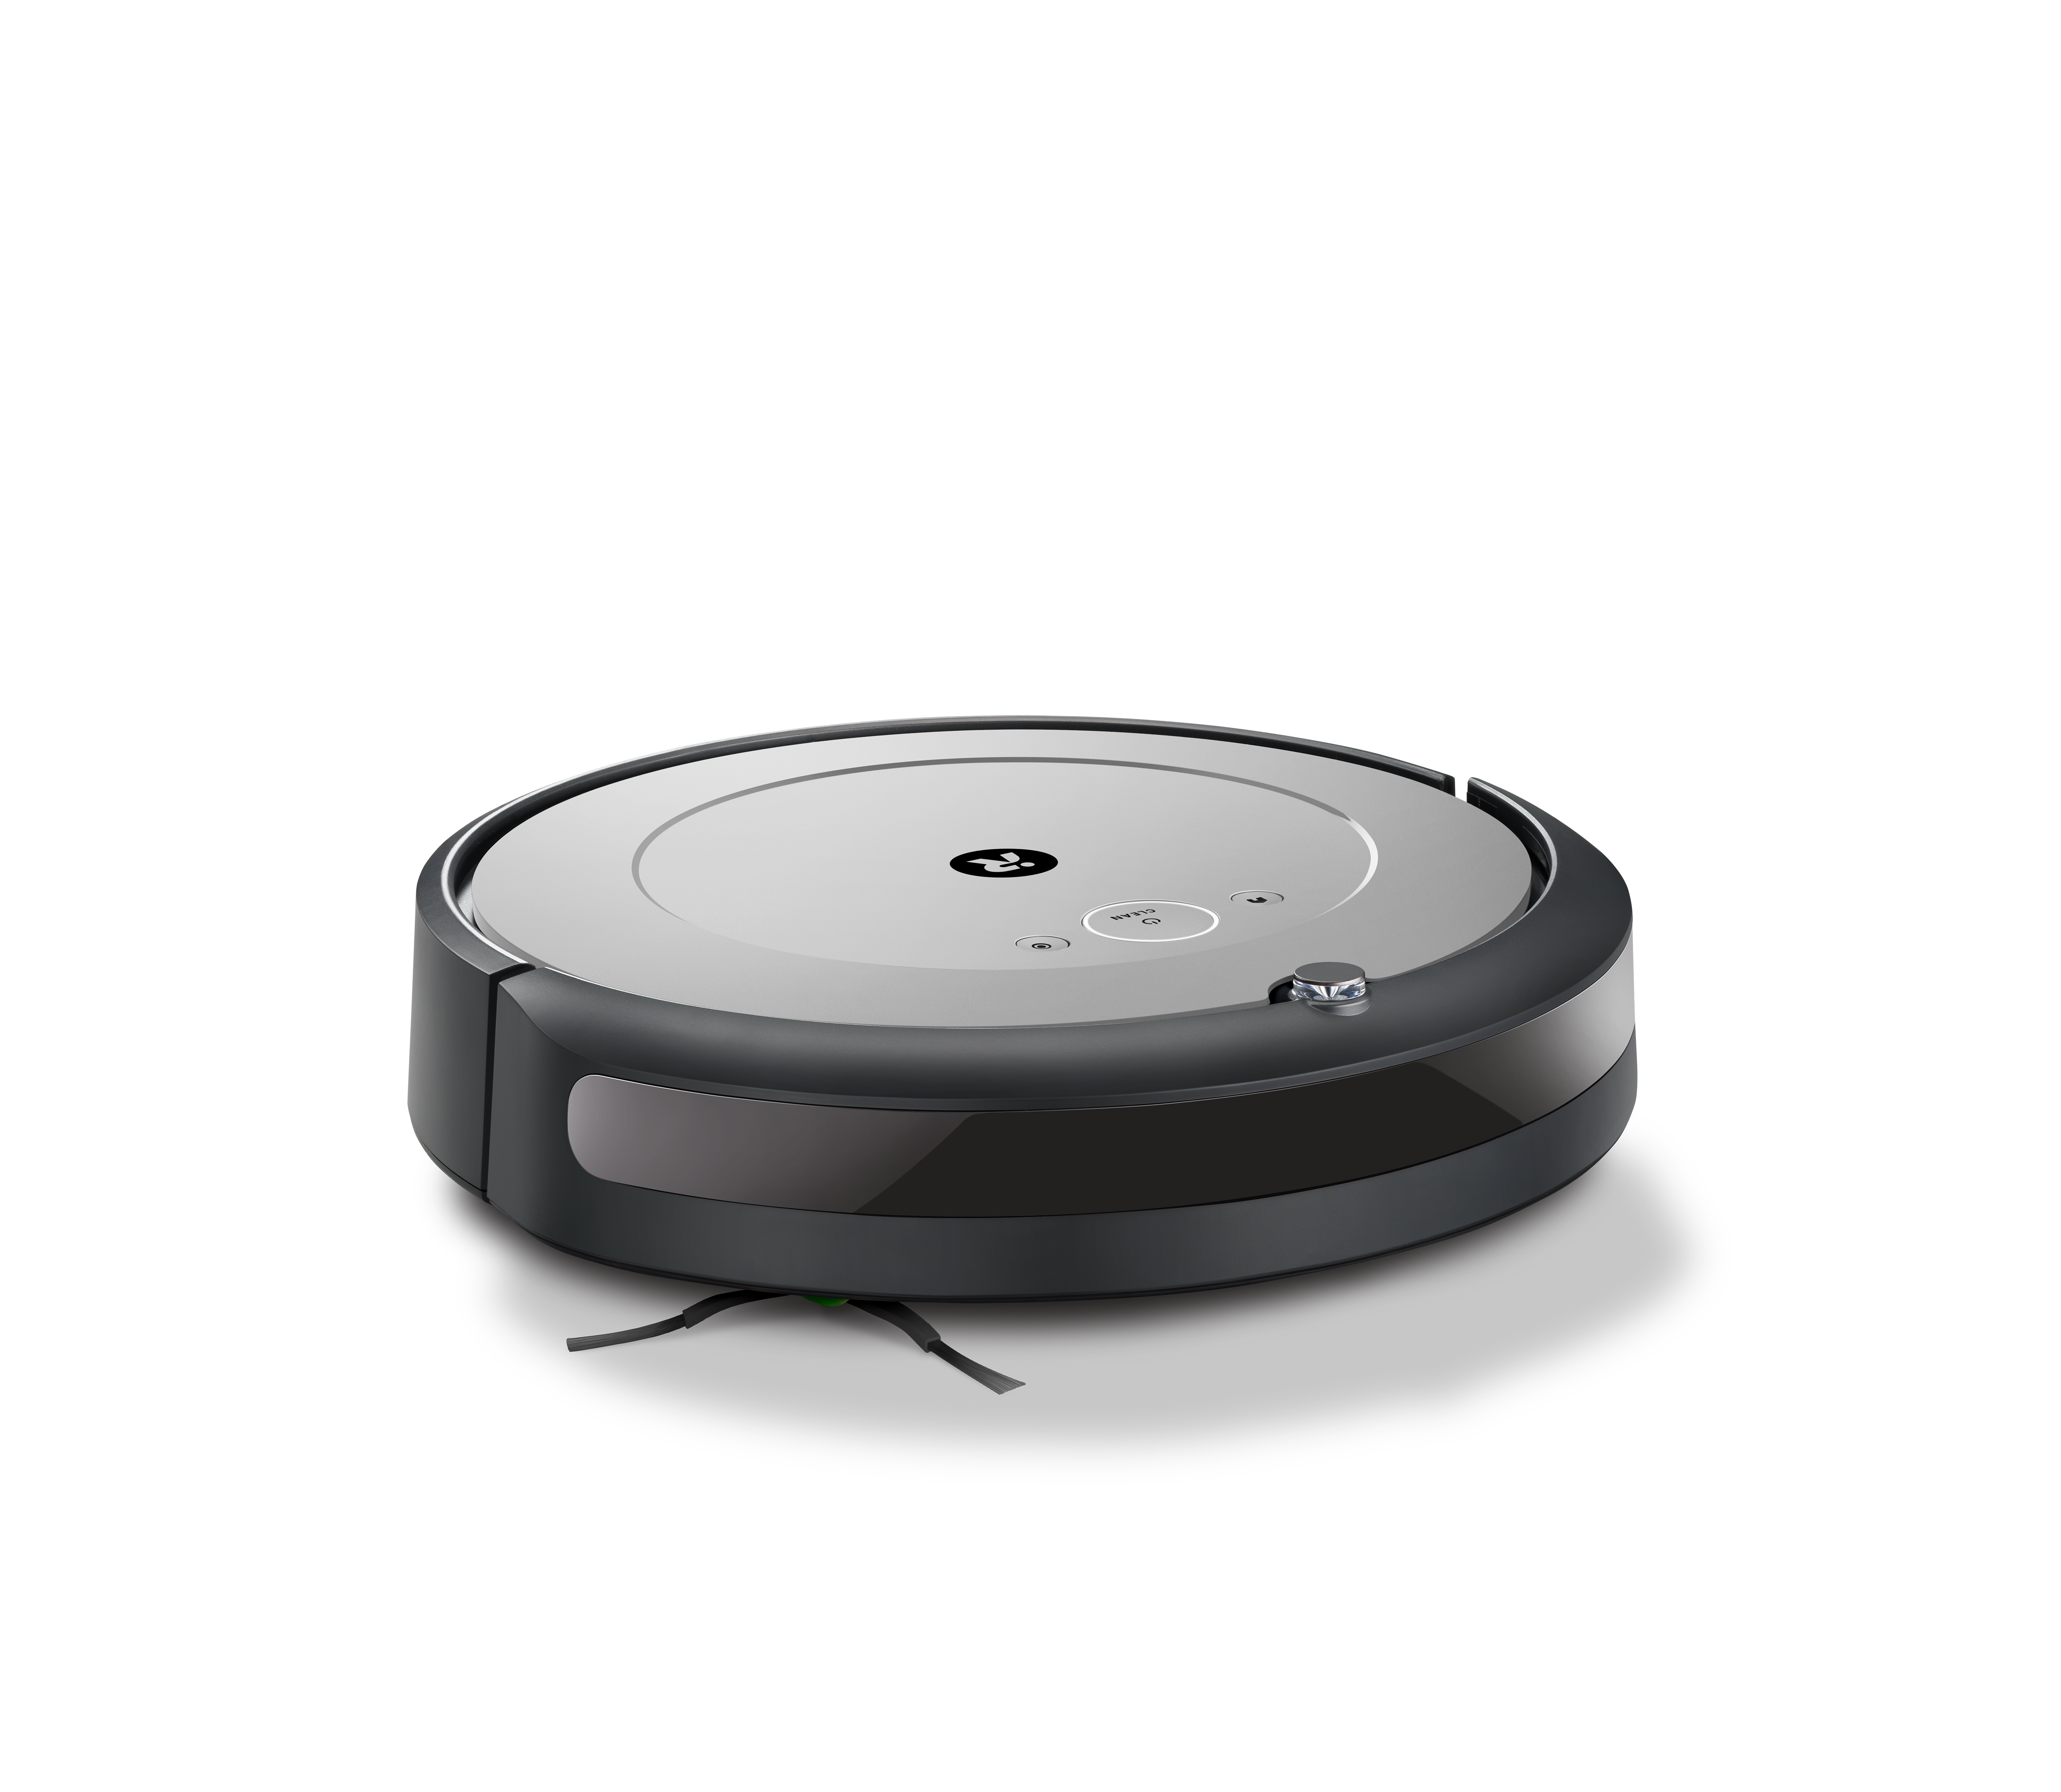 Robot aspirador Roomba® i5 Plus con conexión Wi-Fi, vaciado